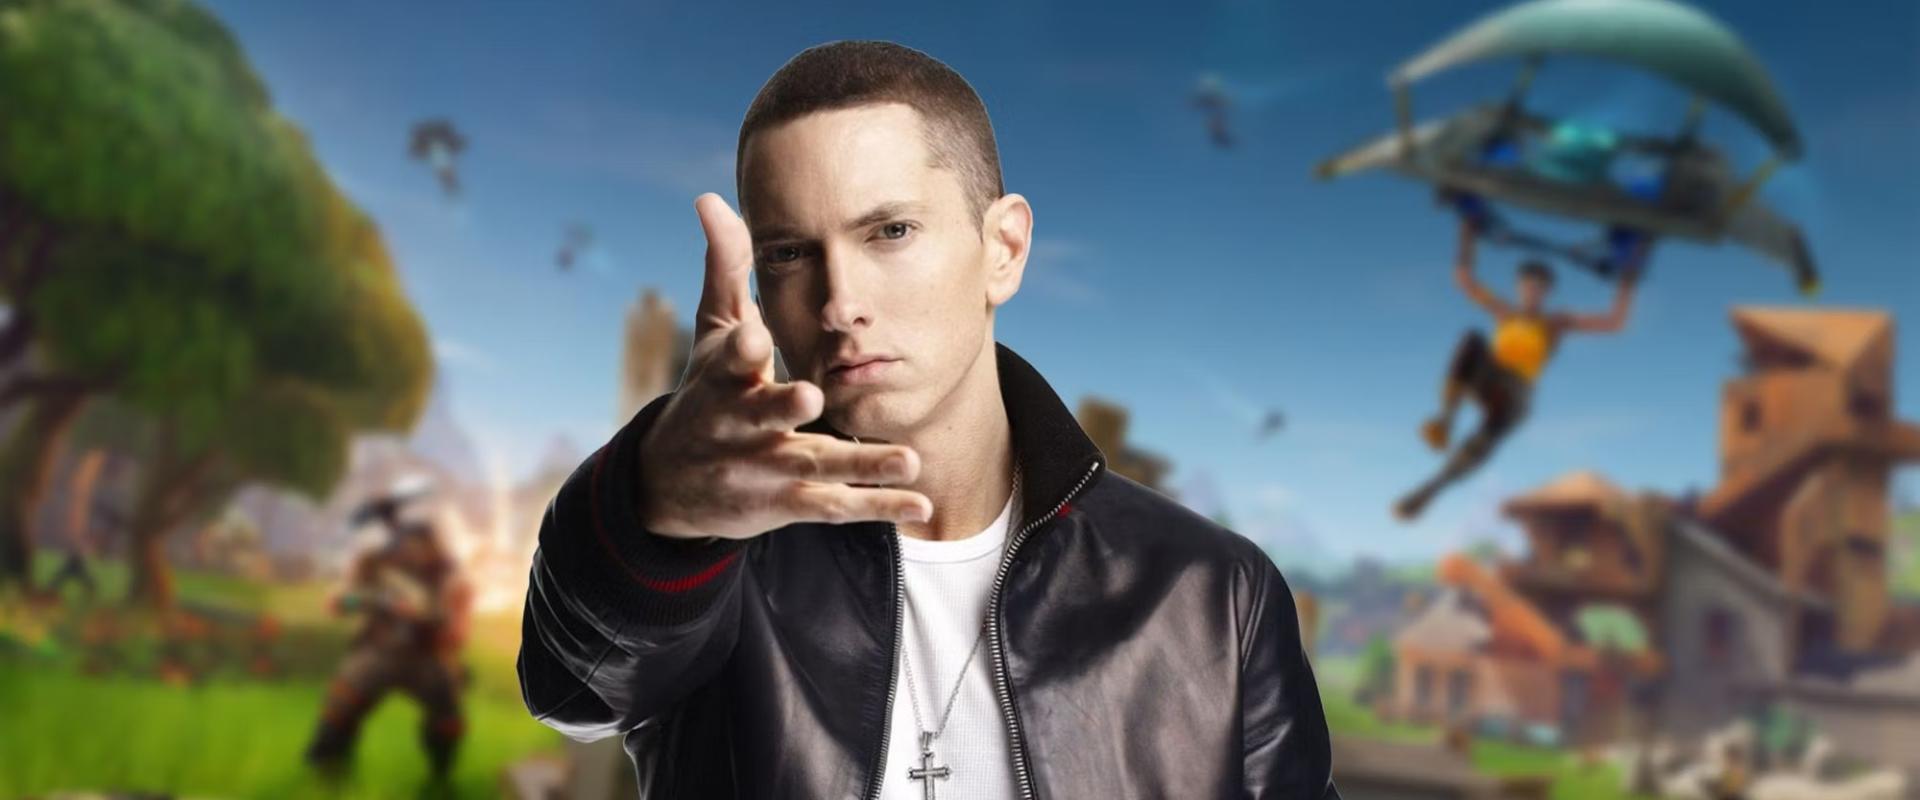 Eminem letarolta a Fortnite-ot, de ez még csak a kezdet